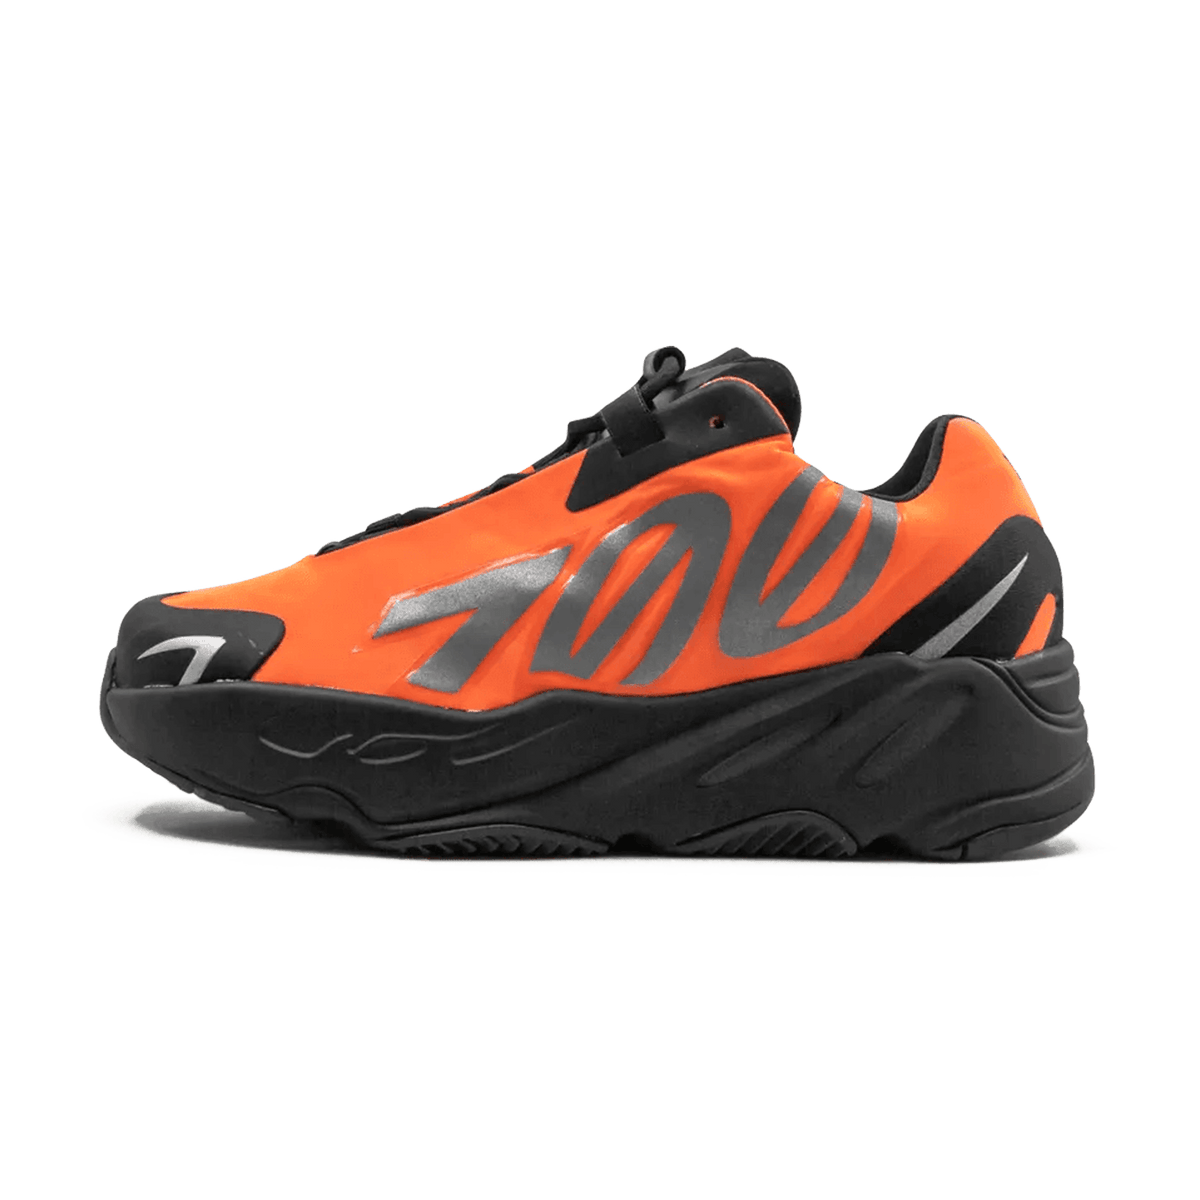 adidas yeezy heels boost 700 mnvn orange kids FX3354 1